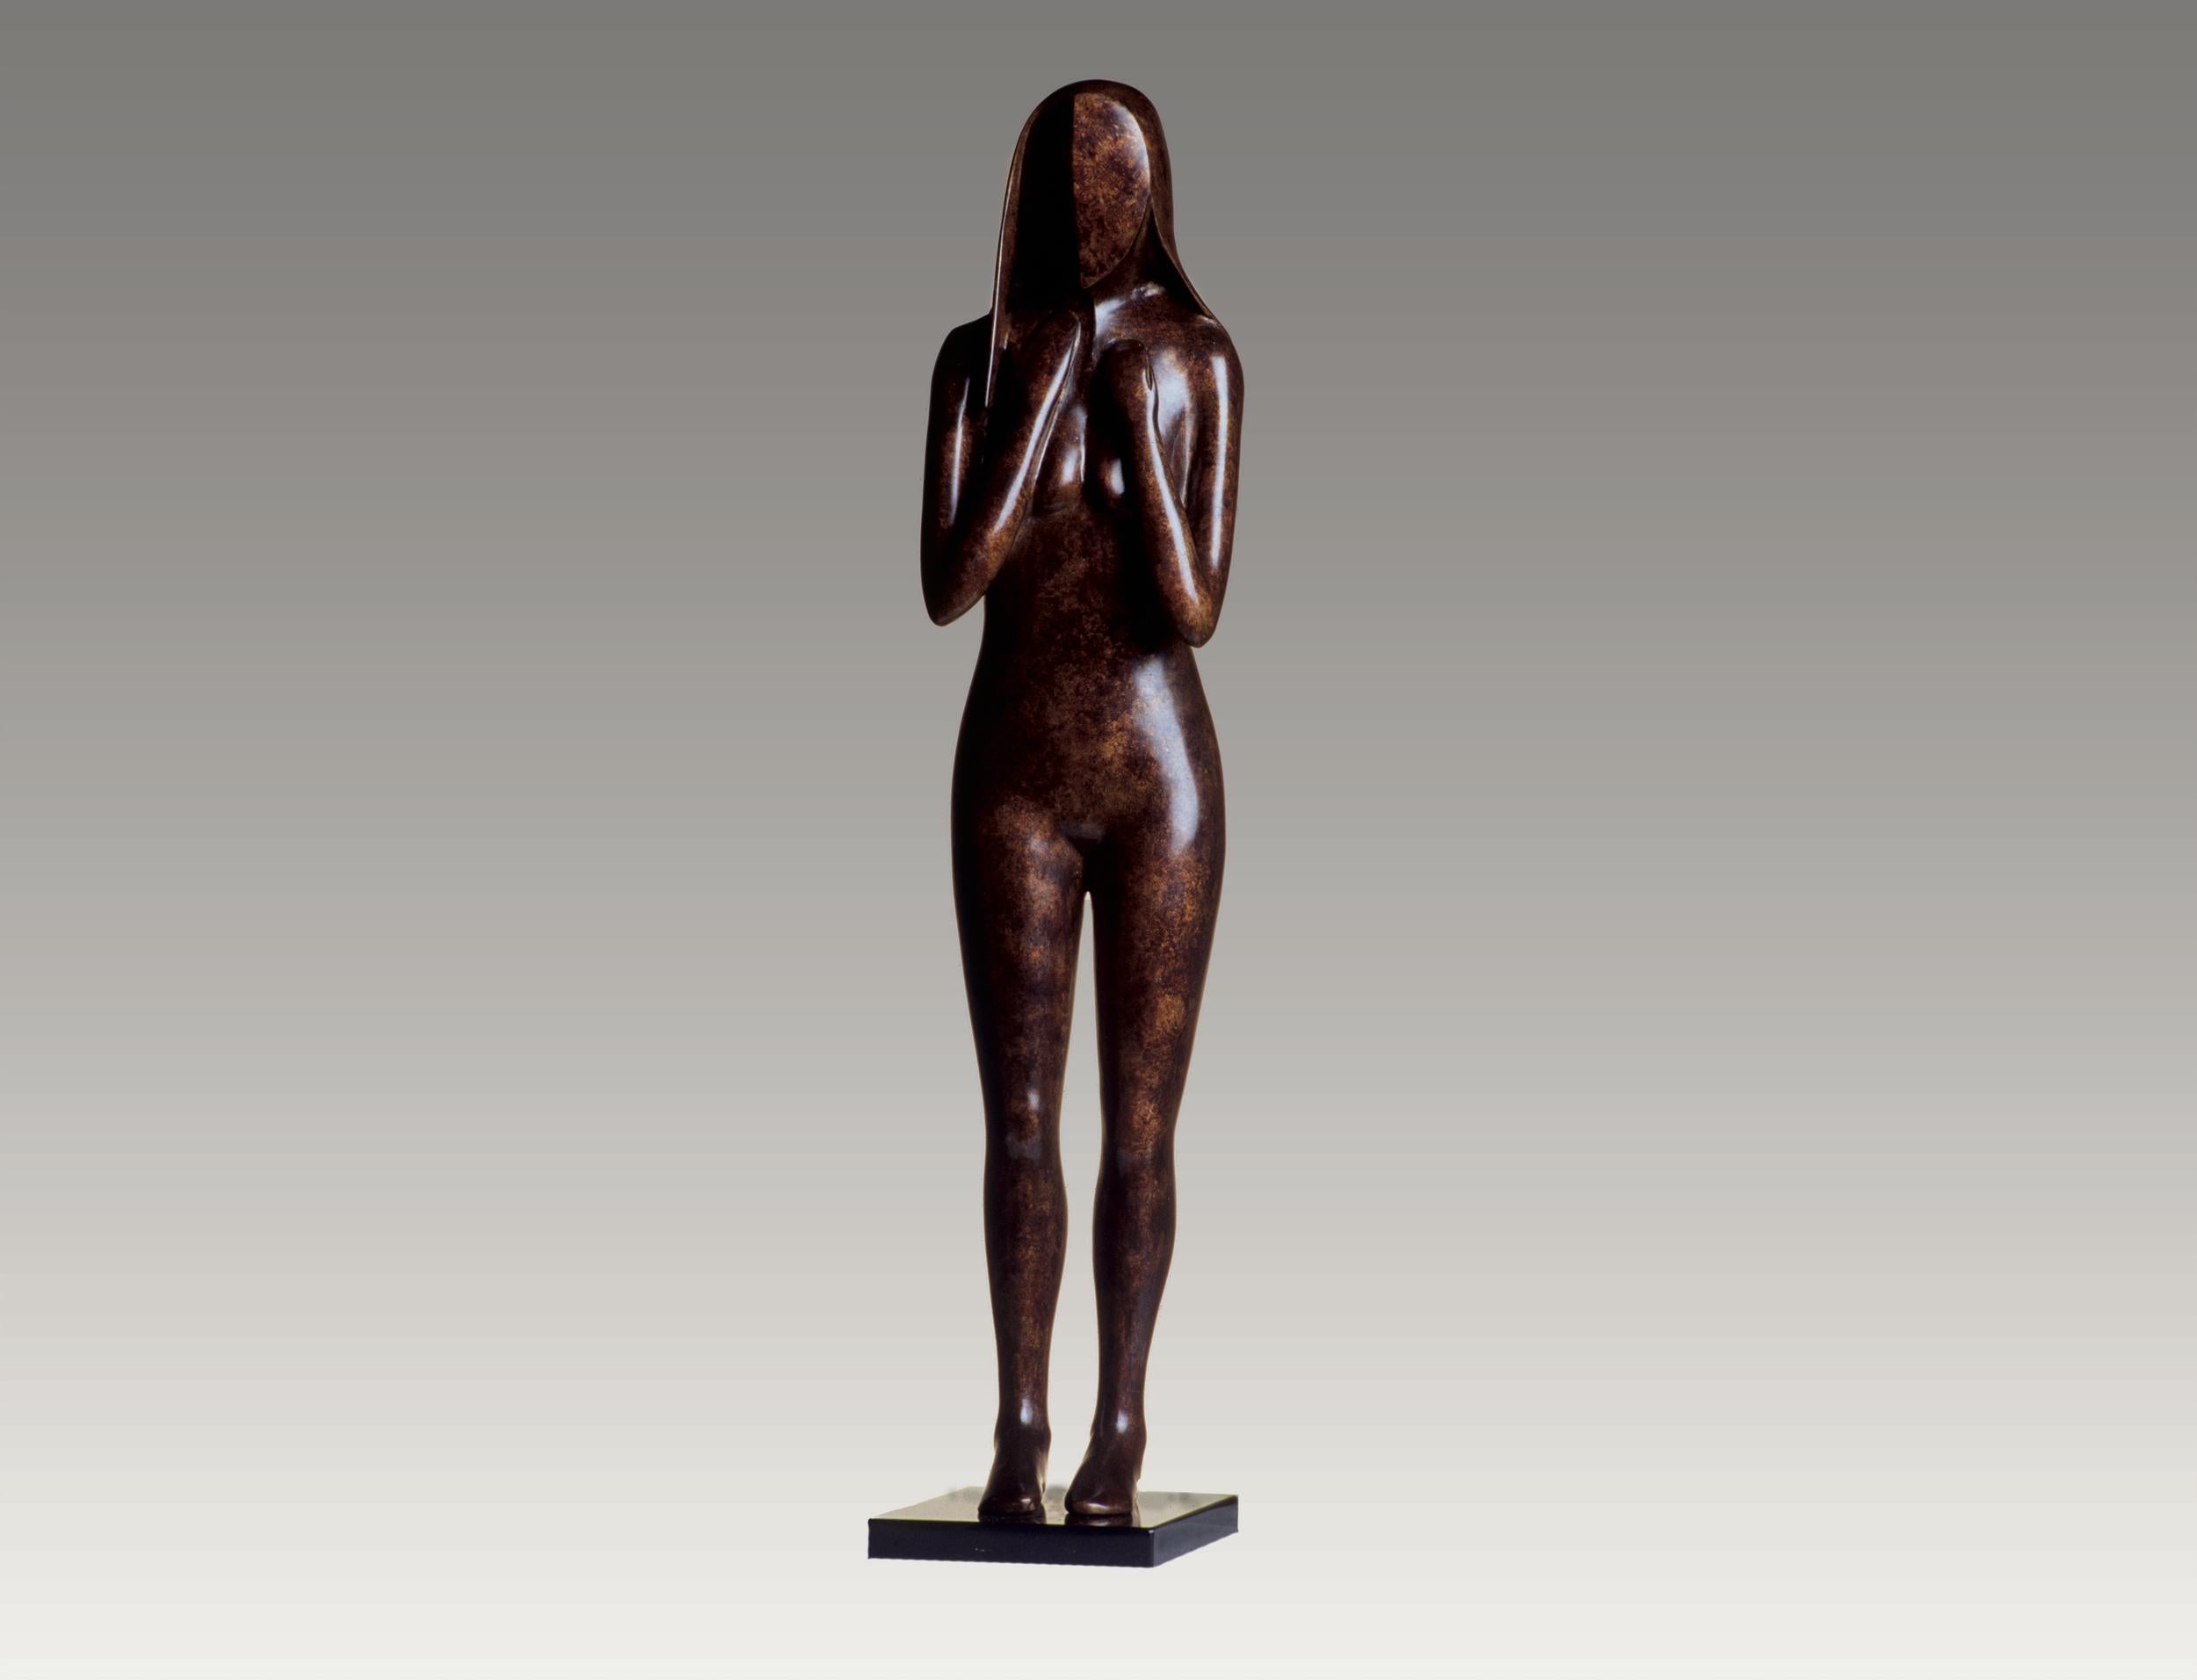 Robert Hooke Figurative Sculpture - Shy Standing Nude